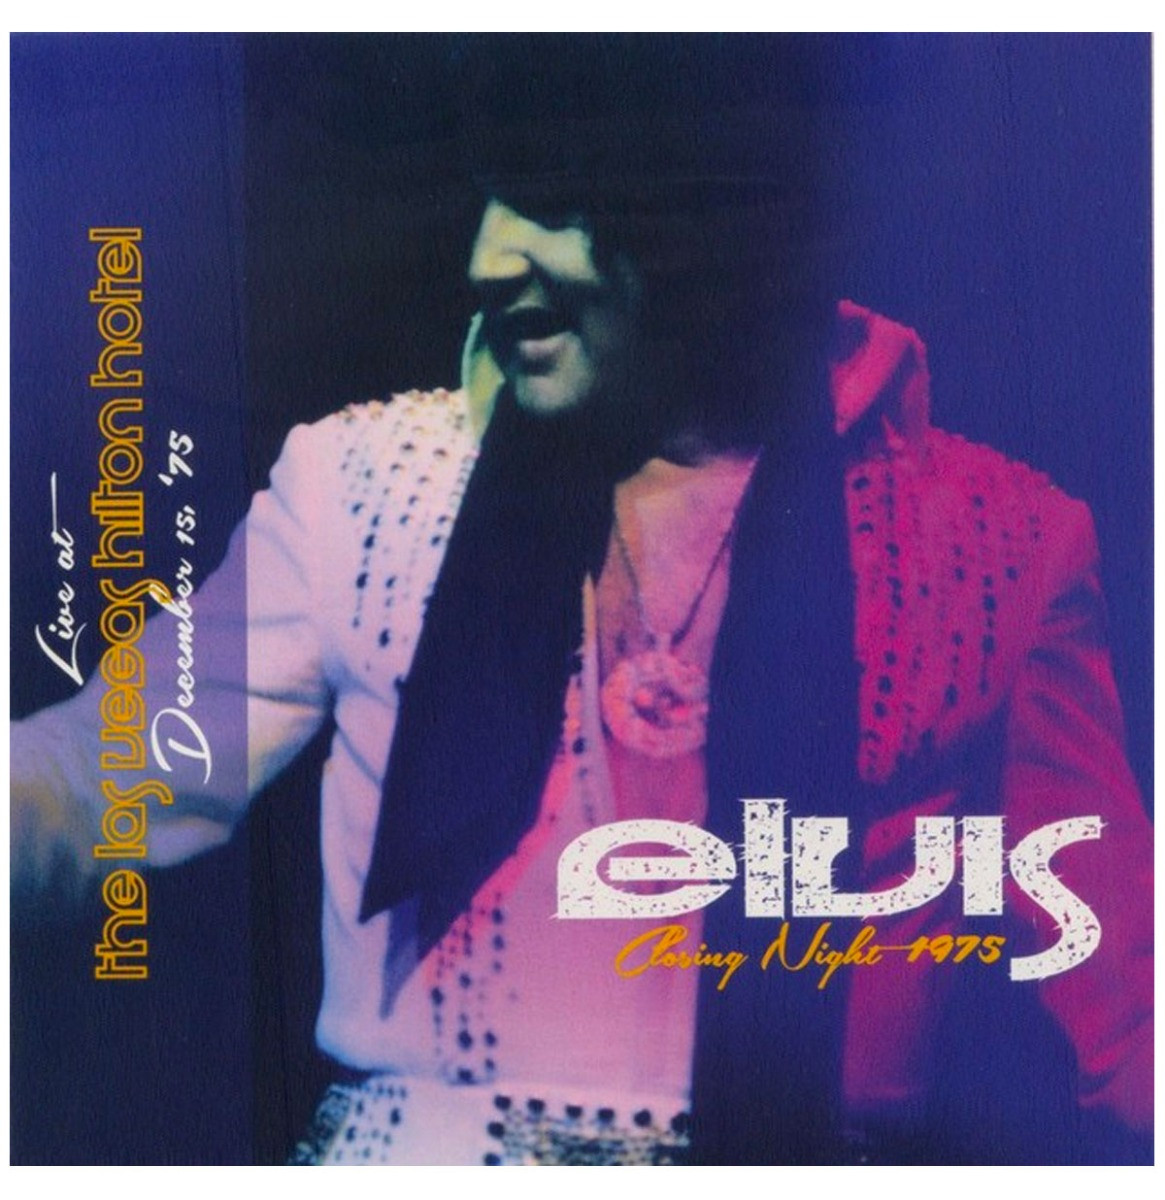 Elvis Presley - Closing Night 1975 2-CD